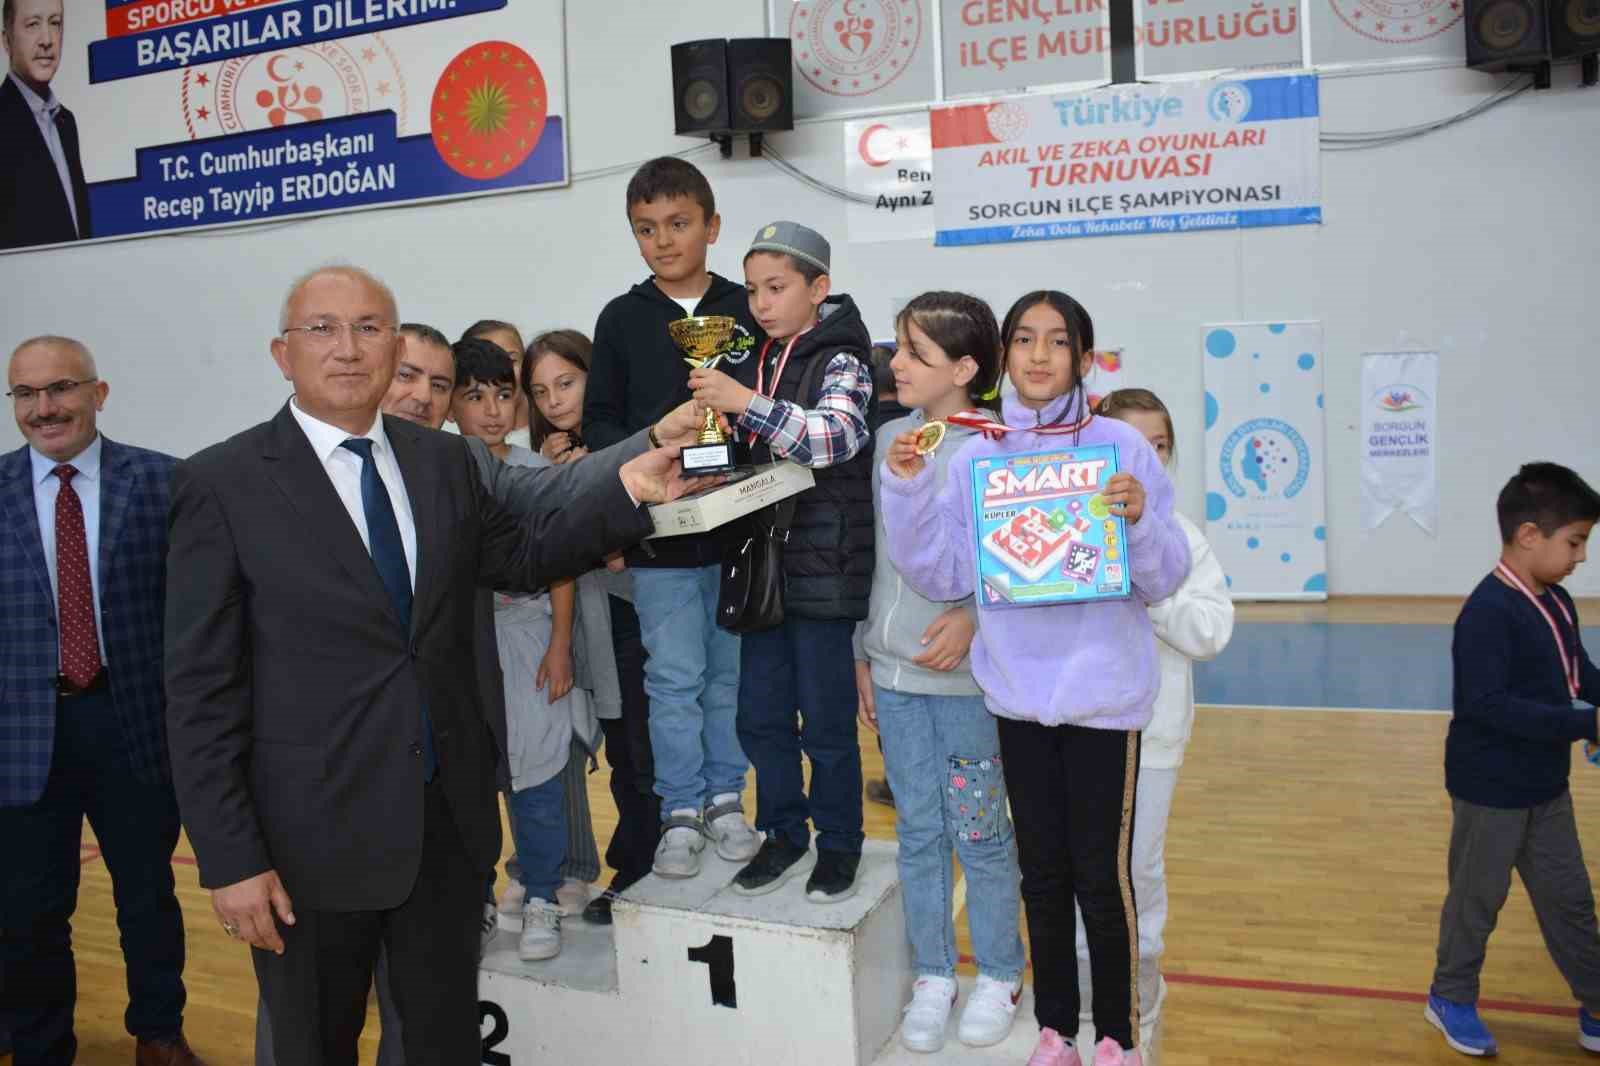 Sorgun’da Türkiye Akıl ve Zeka Oyunları Turnuvası’nın 6.sı düzenlendi
